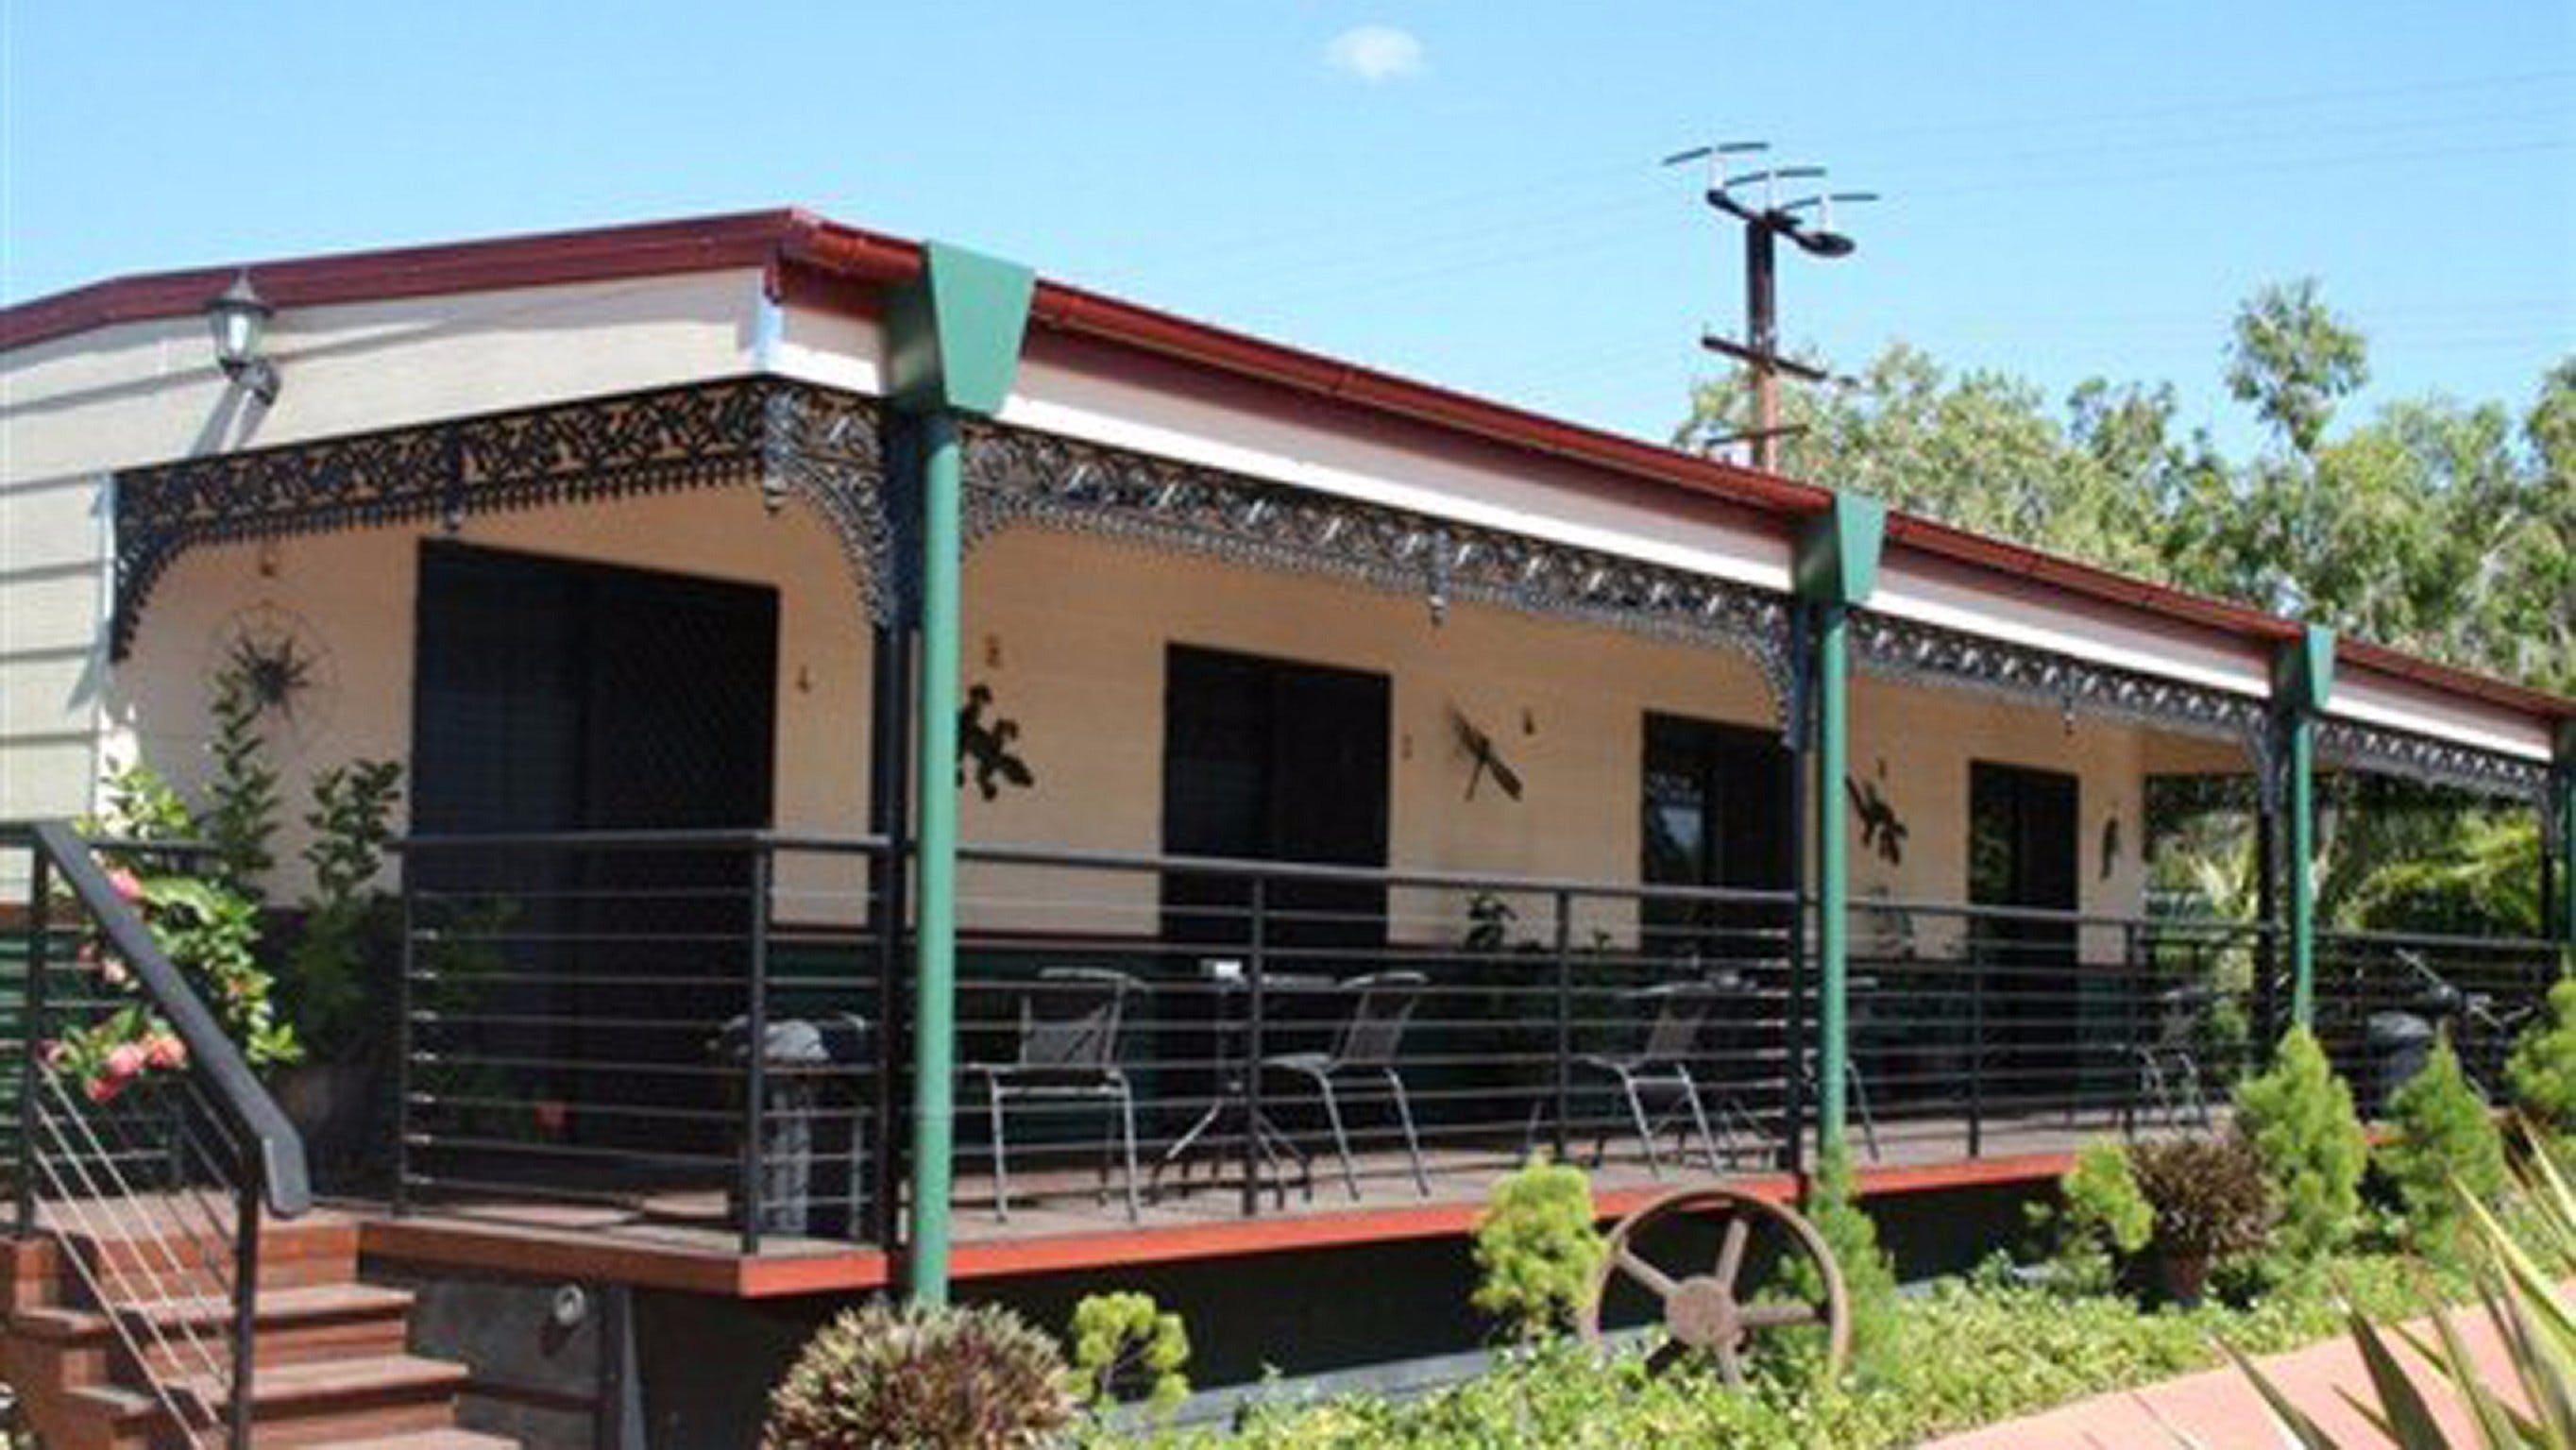 Pine Creek Railway Resort - Dalby Accommodation